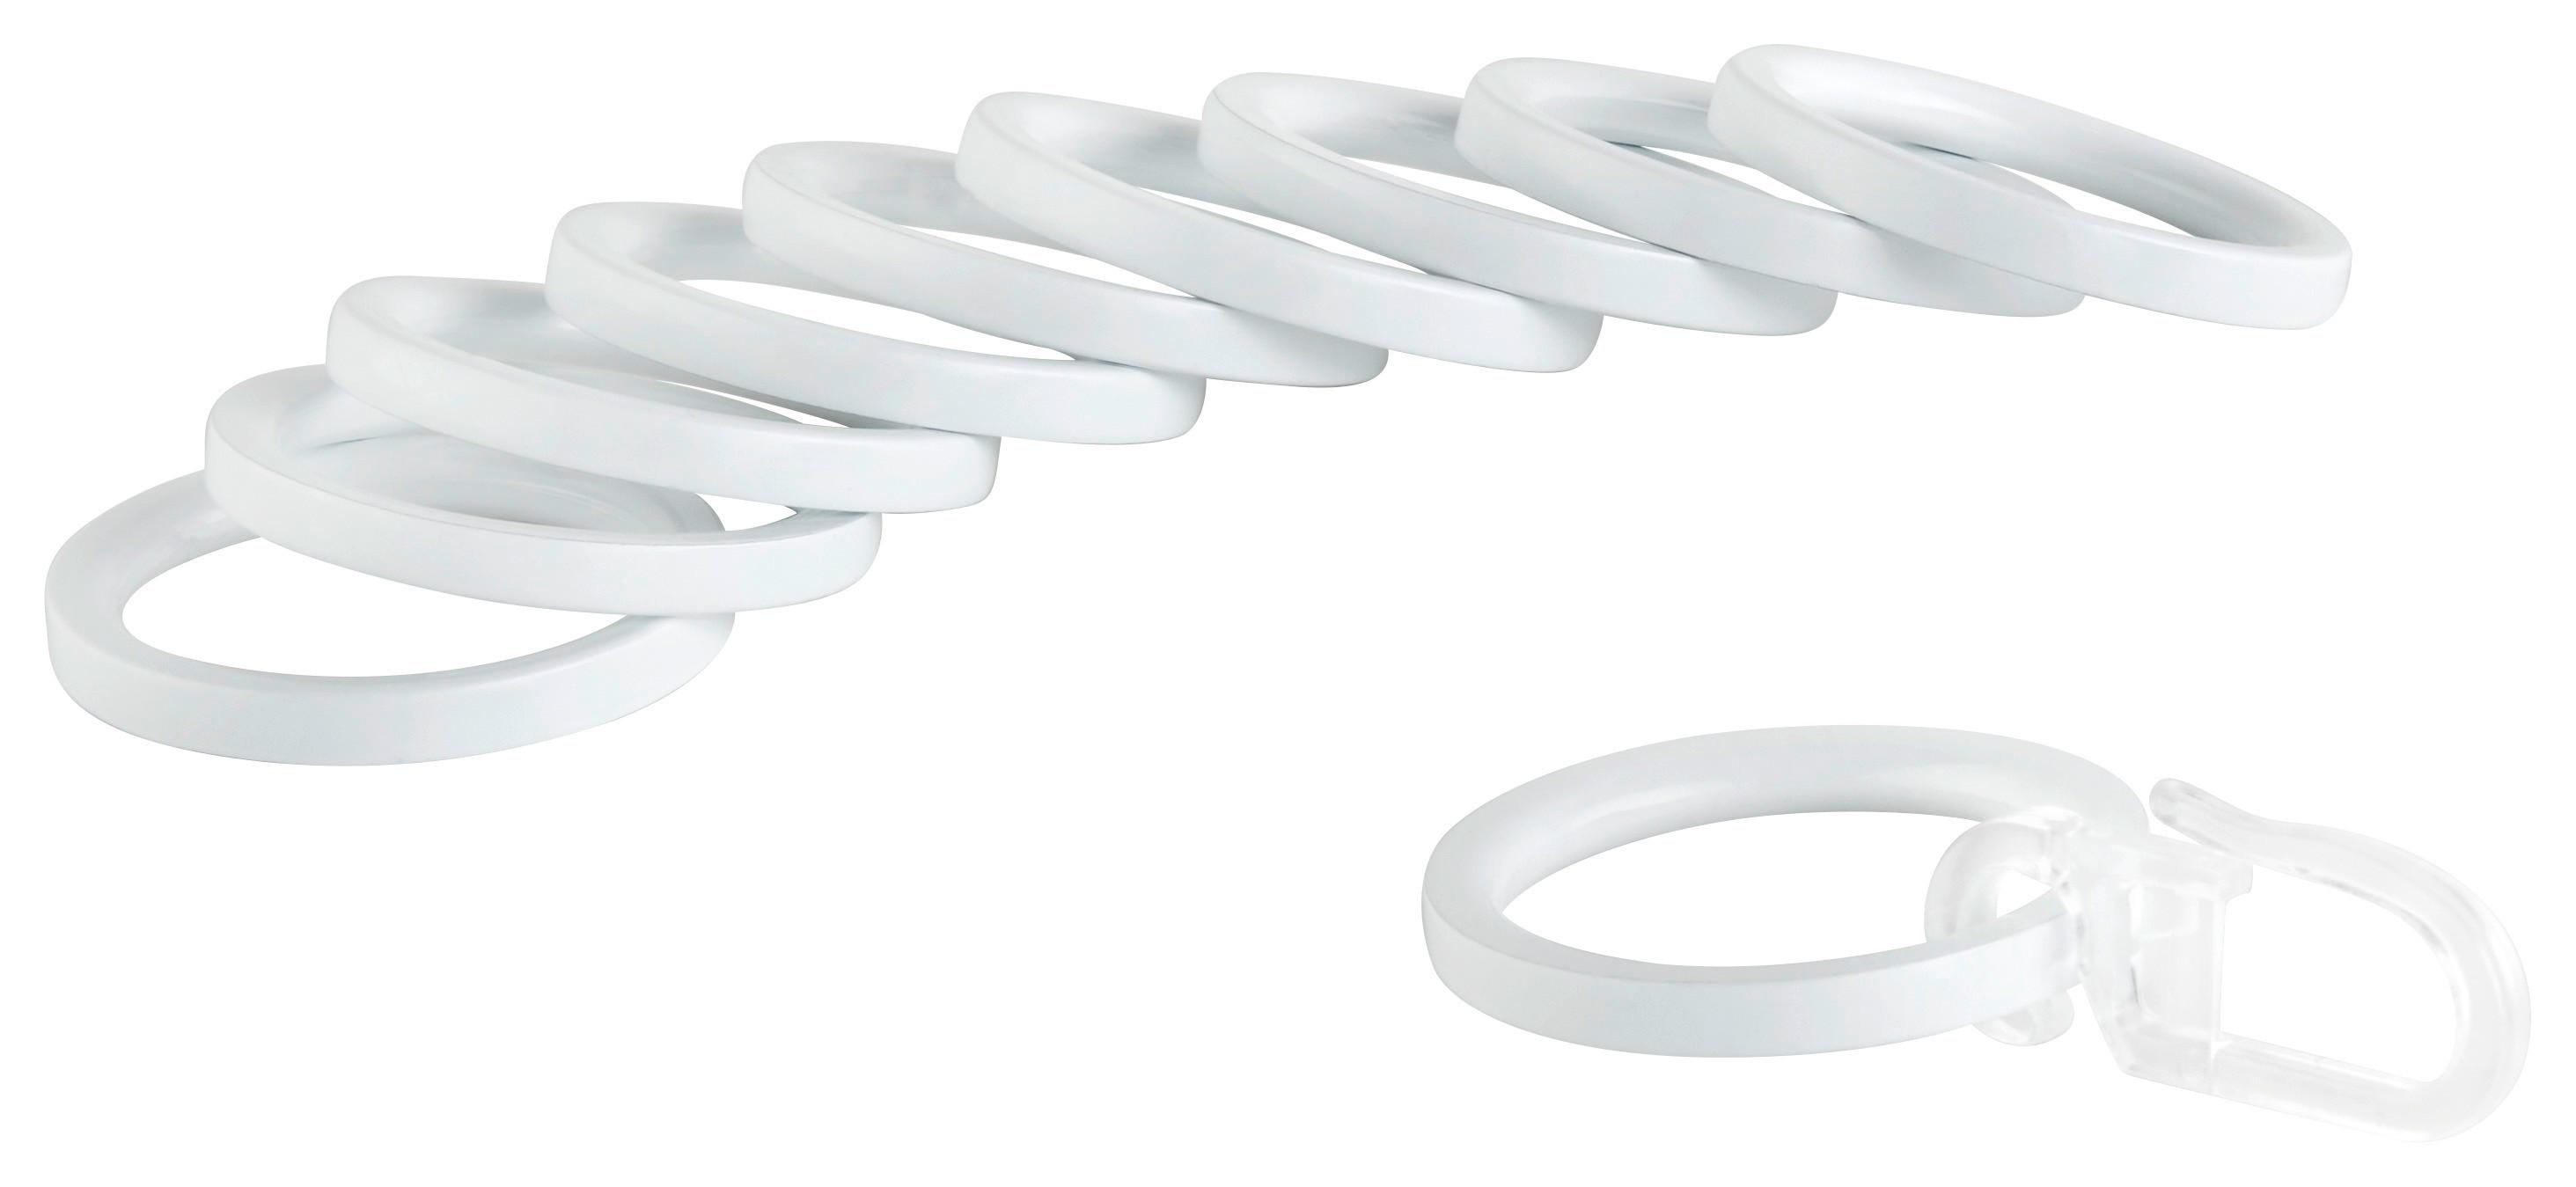 Ringeset für Rillcube in Weiß 10 Stk. - Weiß, Metall (16cm) - Modern Living